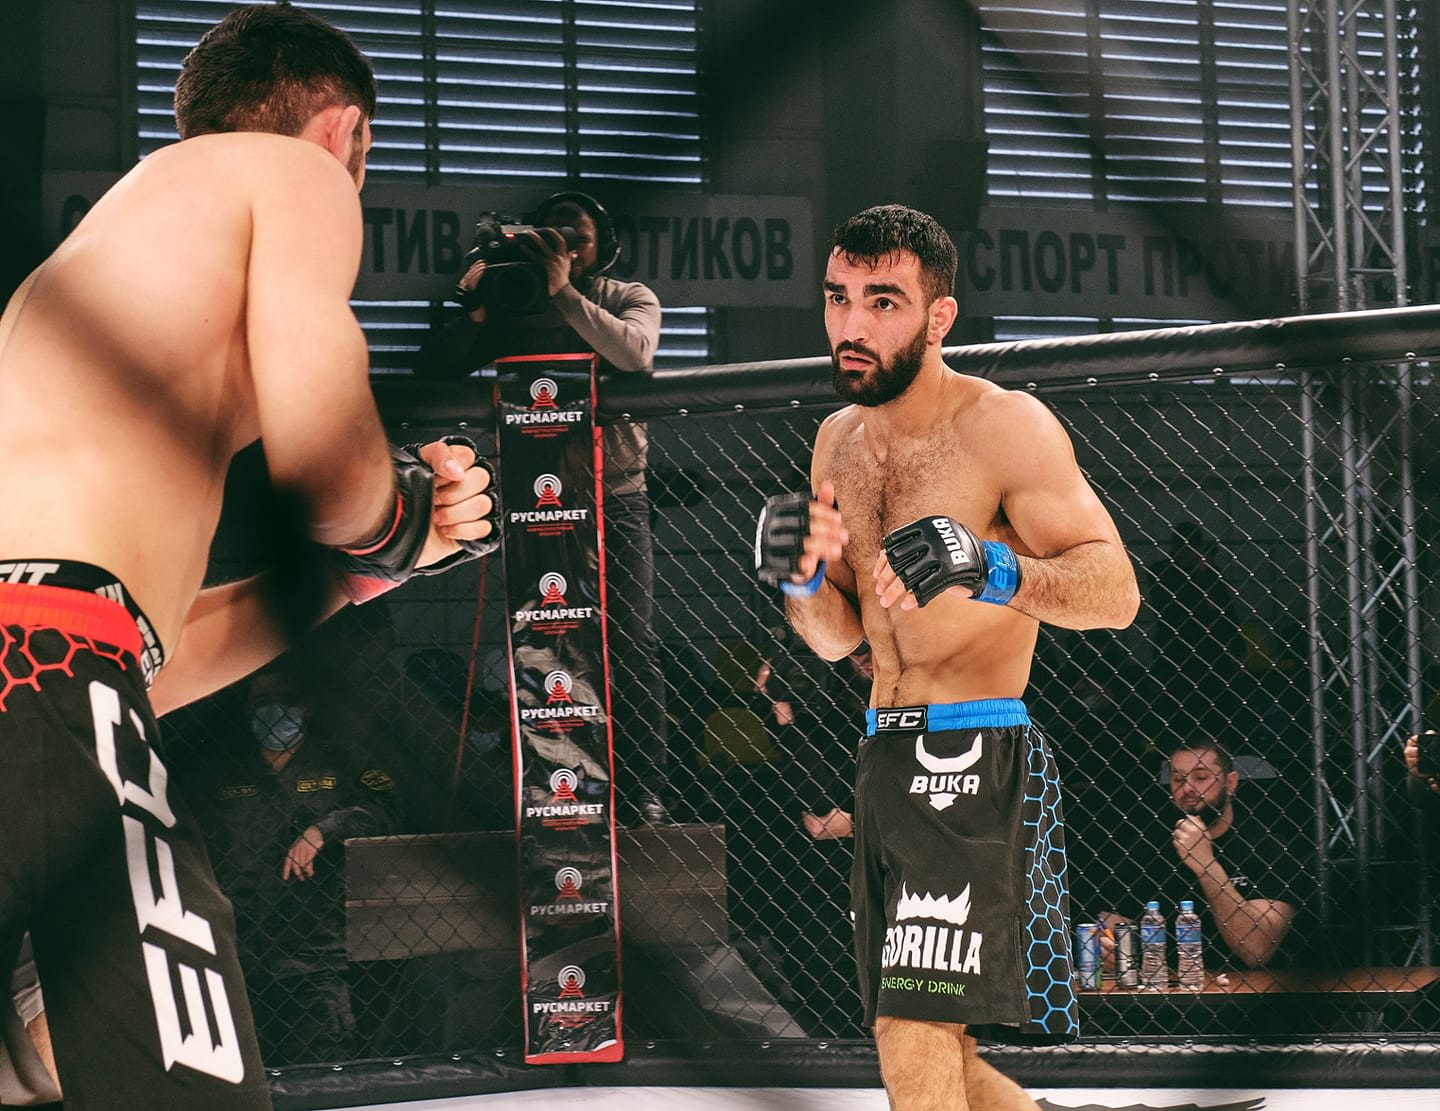 טריאל אבסוב לוחם MMA ישראלי